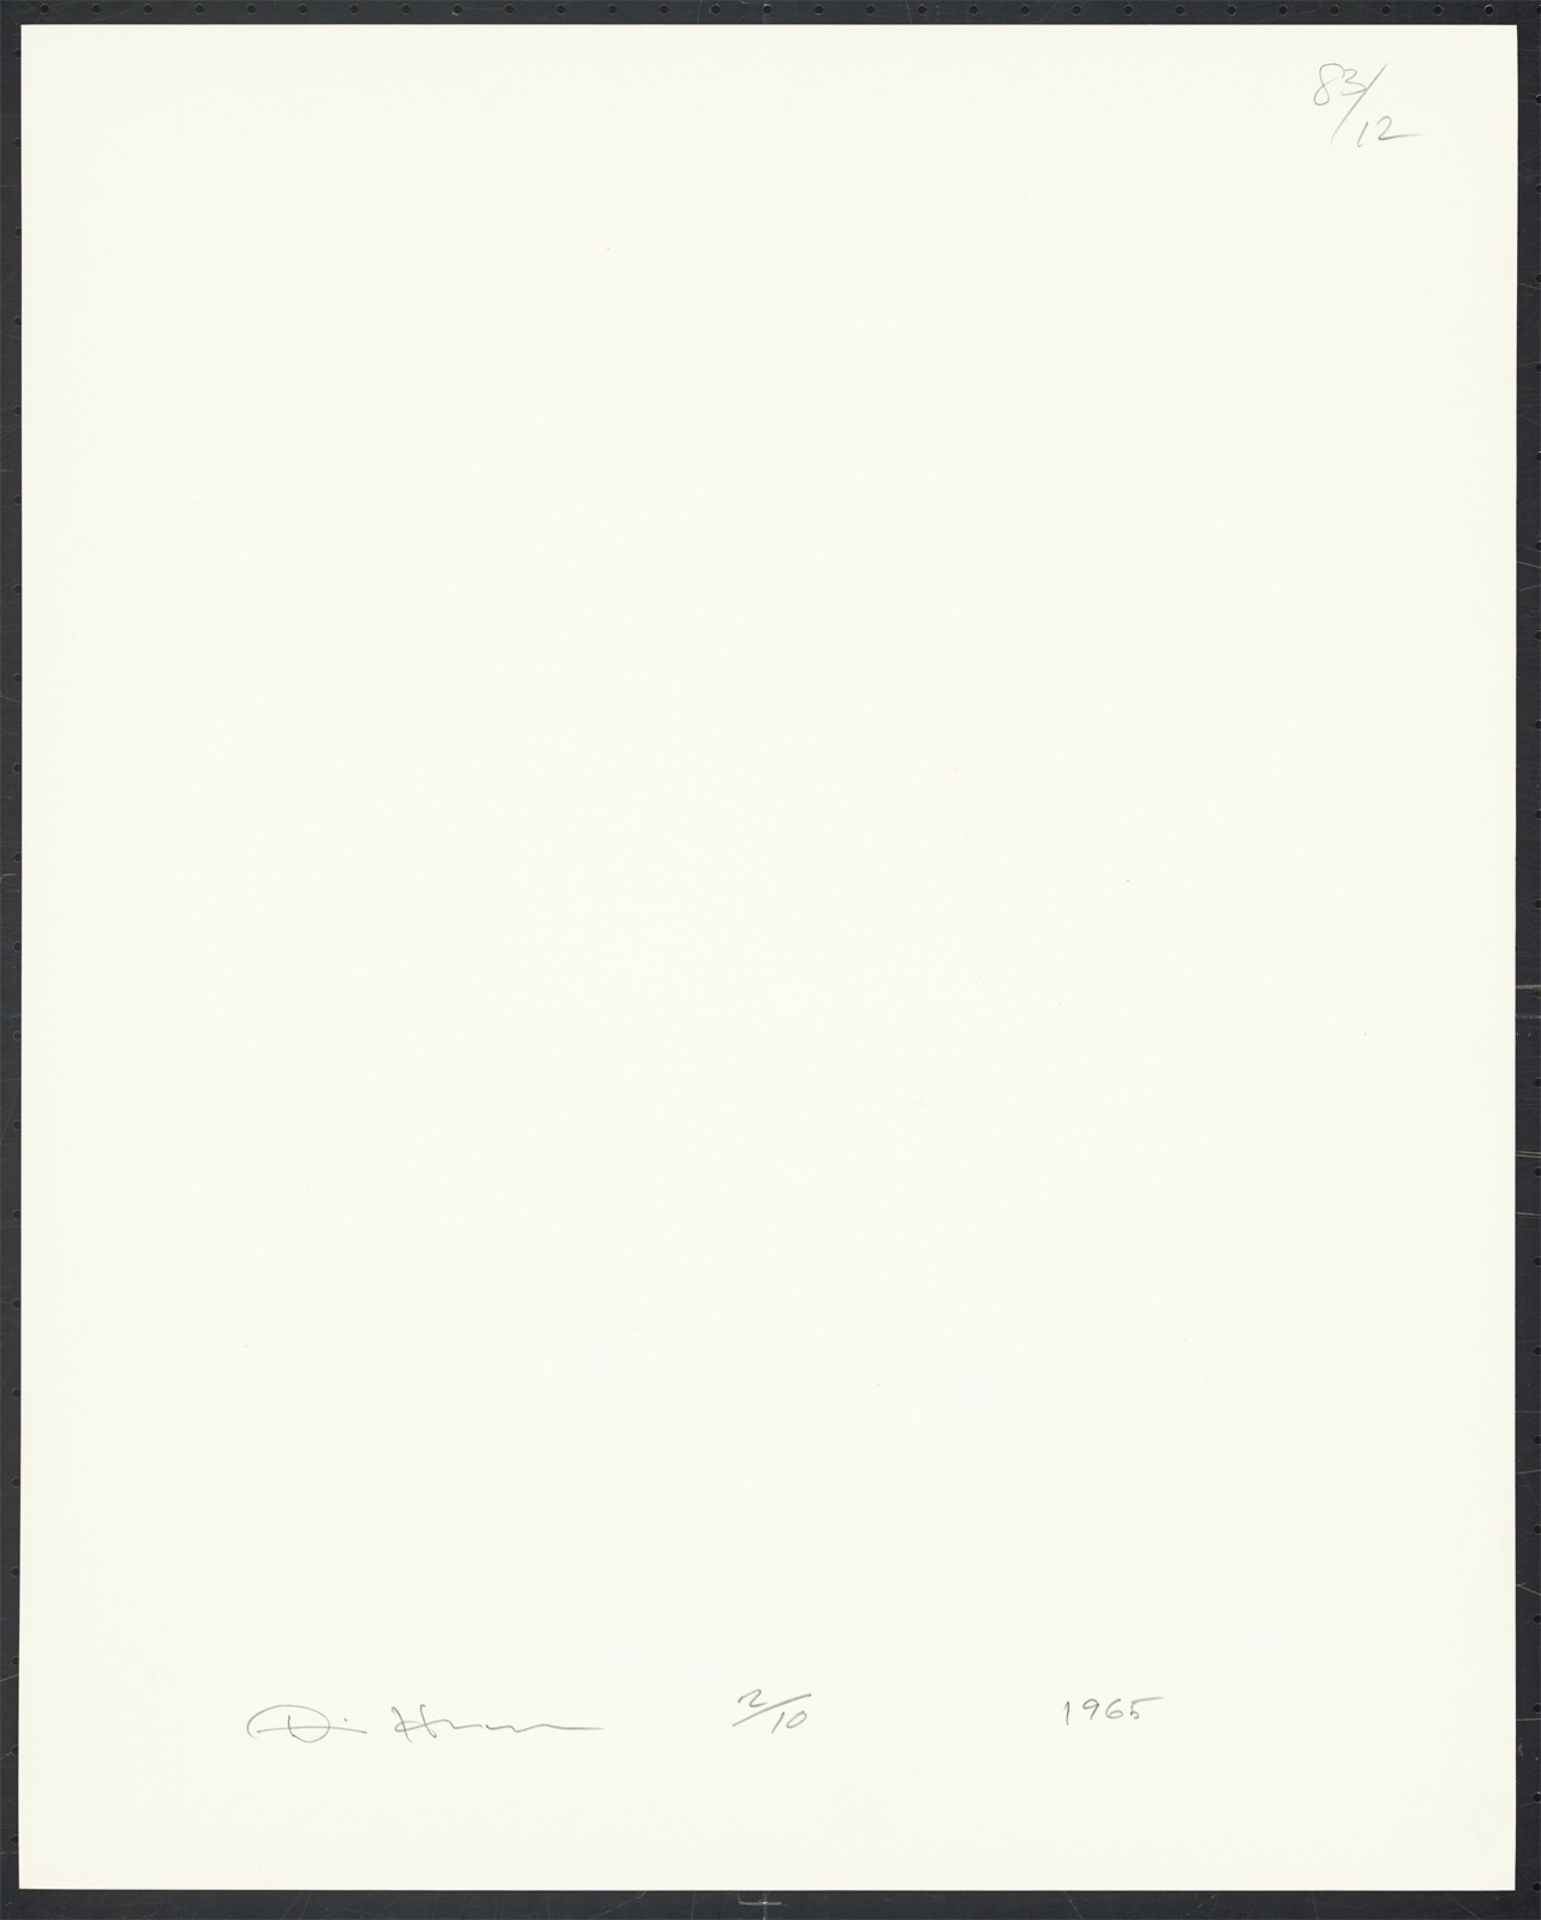 Dennis Hopper. Convolute: Portraits. 1963/65 - Image 6 of 16